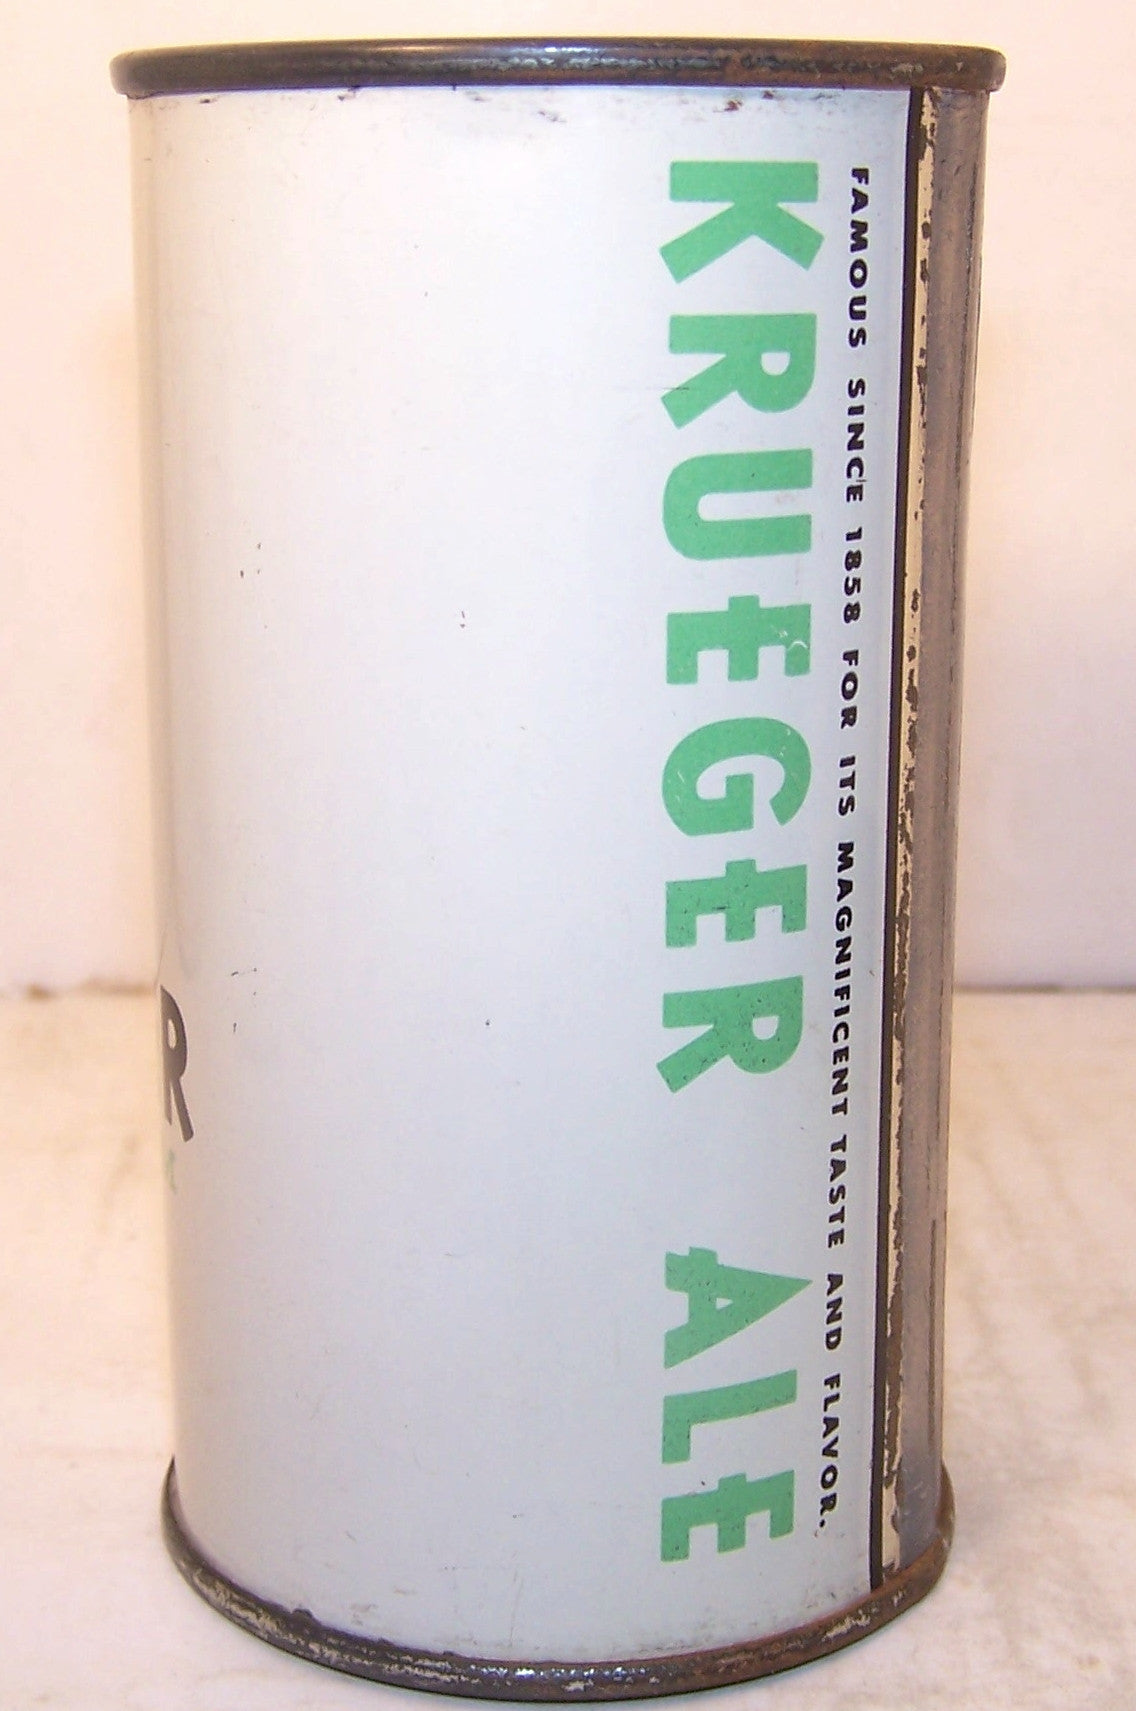 Krueger Light Cream Ale, USBC 89-36, Grade 1/1+